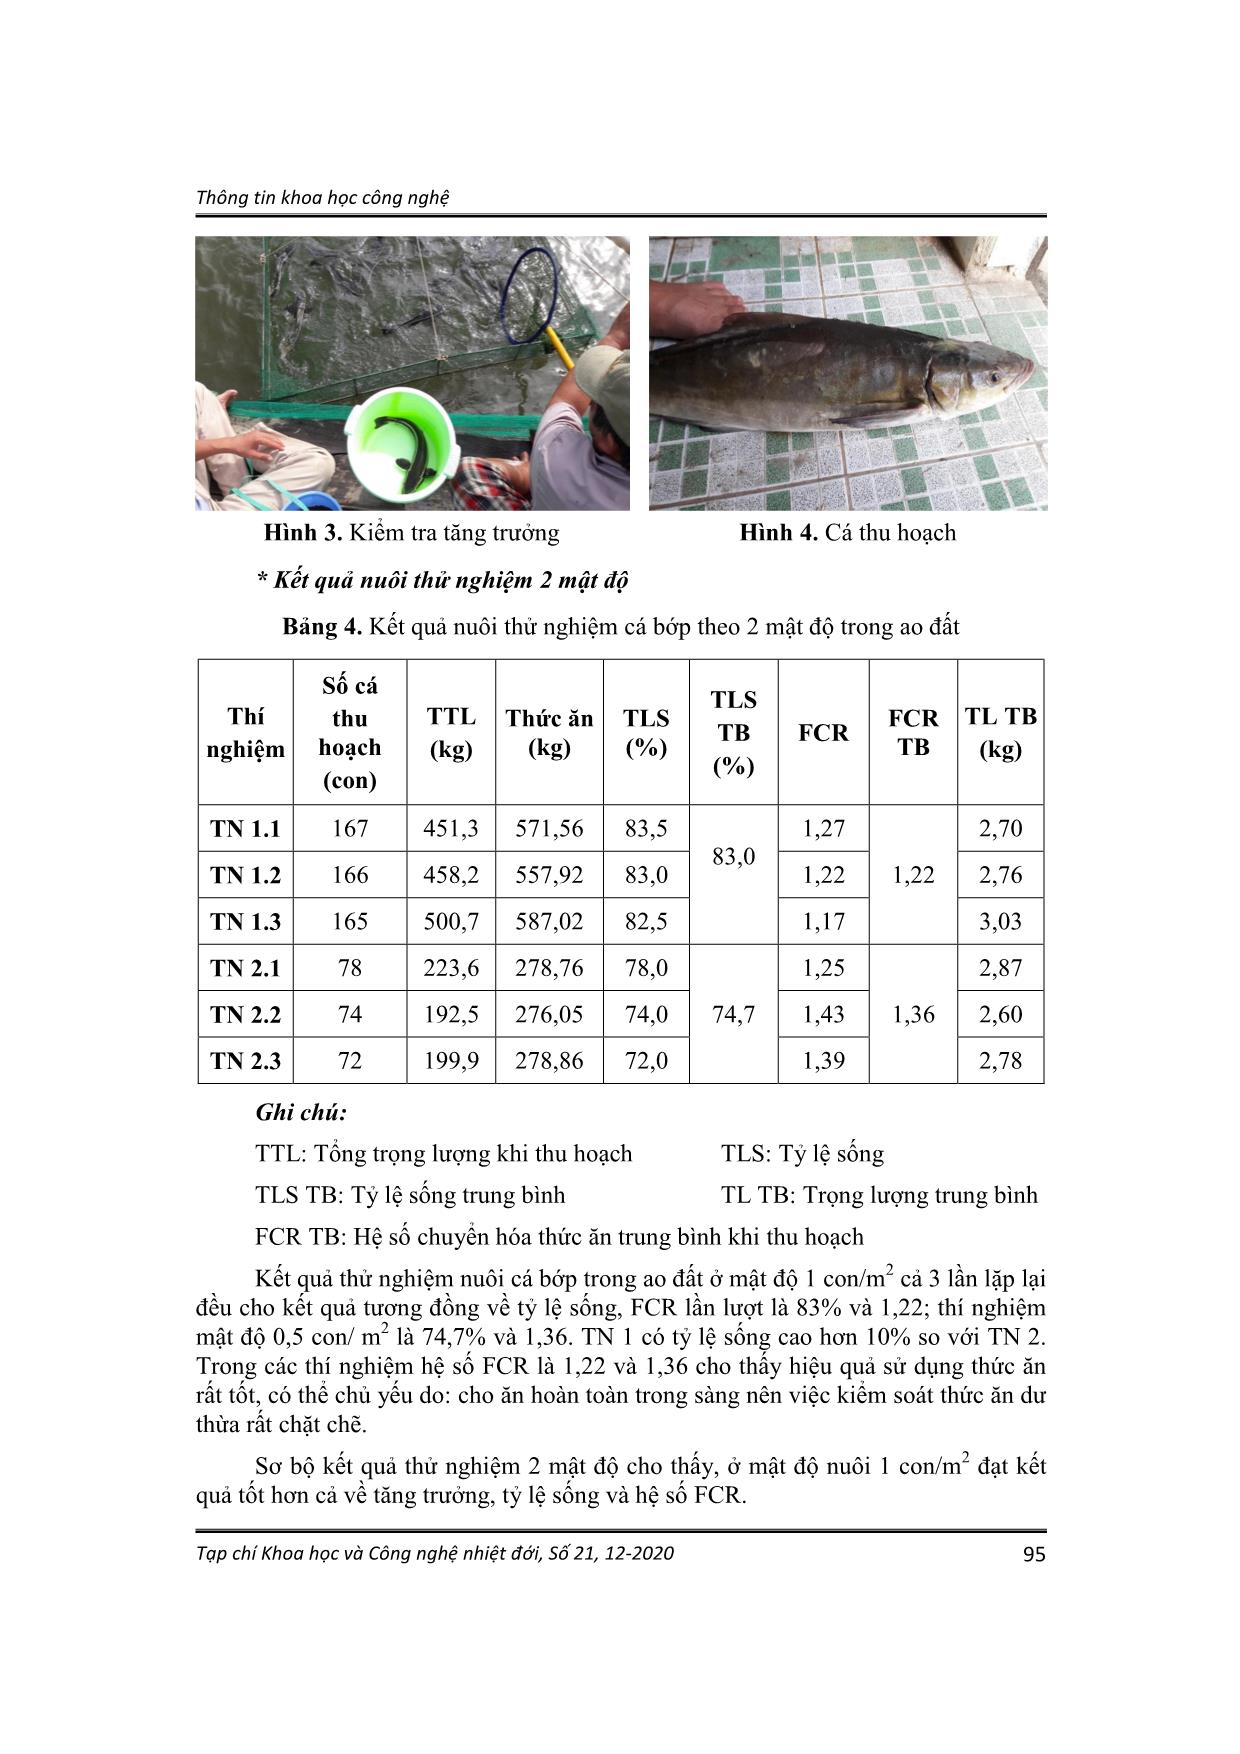 Nghiên cứu thử nghiệm nuôi cá bớp (Rachycentron canadum Linnaeus, 1766) trong ao đất tại huyện Cần Giờ, thành phố Hồ Chí Minh trang 5